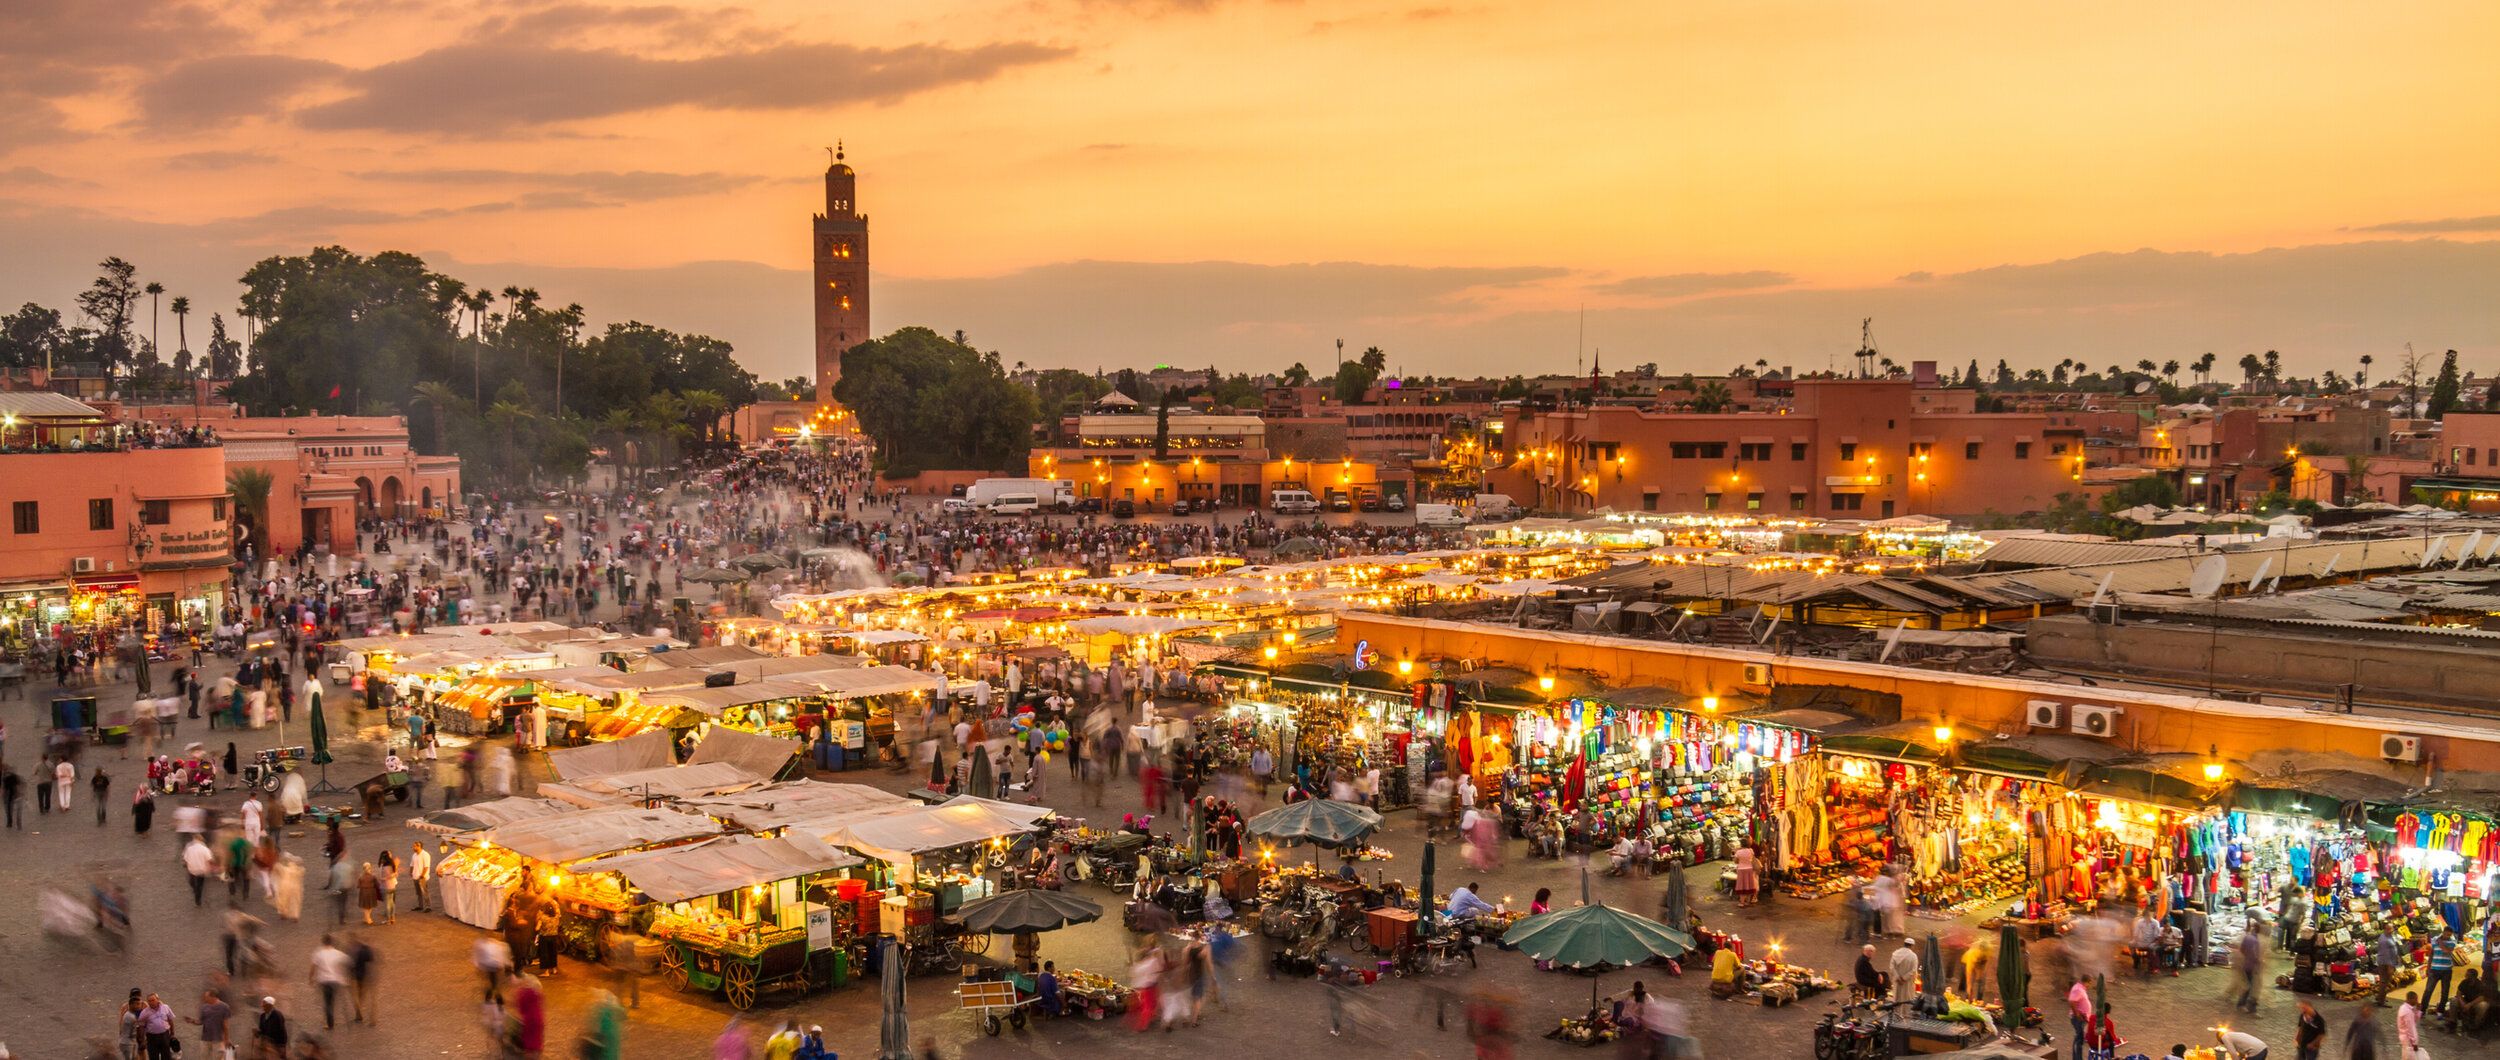 La plaza y el mercado de Marrakech, Jamaa El Fna, al atardecer (foto cortesía de Getty Images).